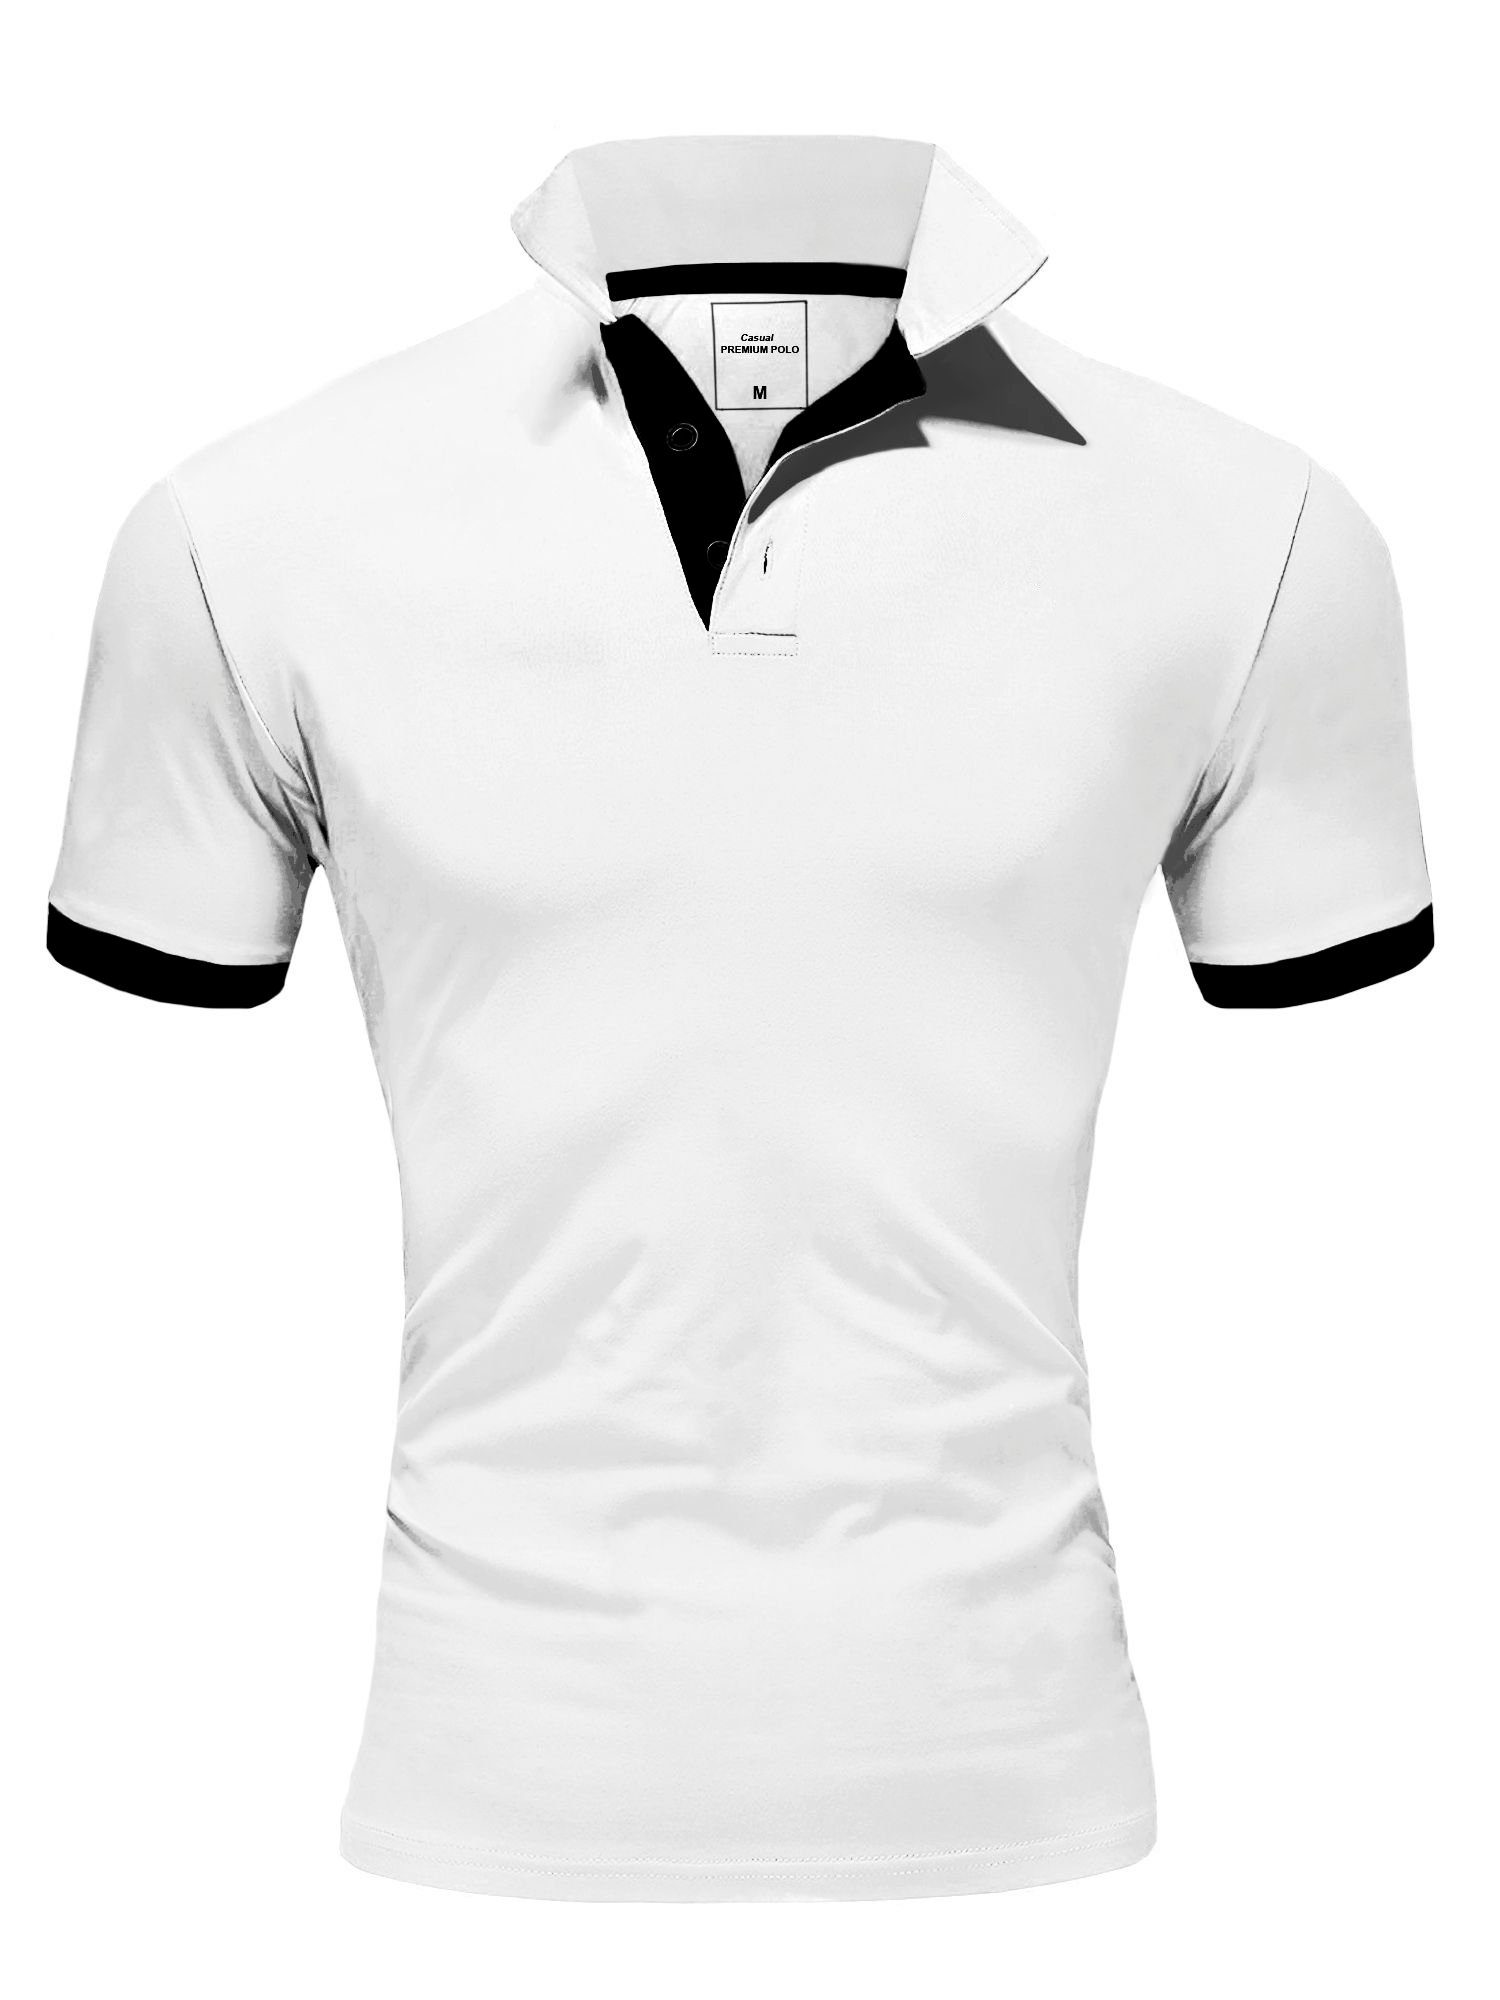 behype Poloshirt BASE mit Details kontrastfarbigen weiß-schwarz